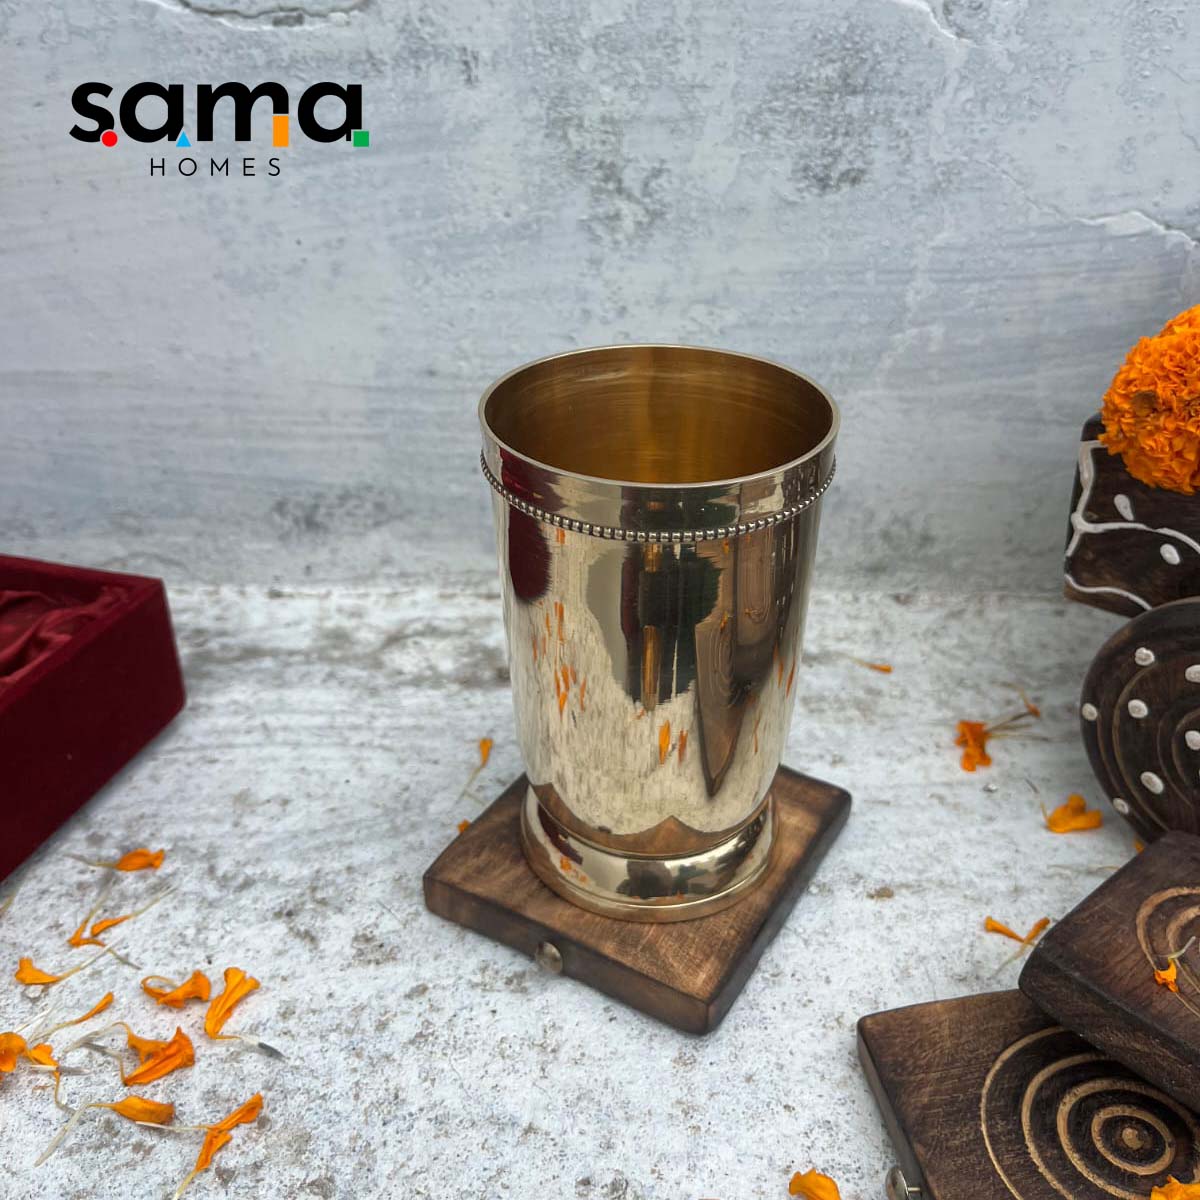 SAMA Homes - brass plain glass with velvet box